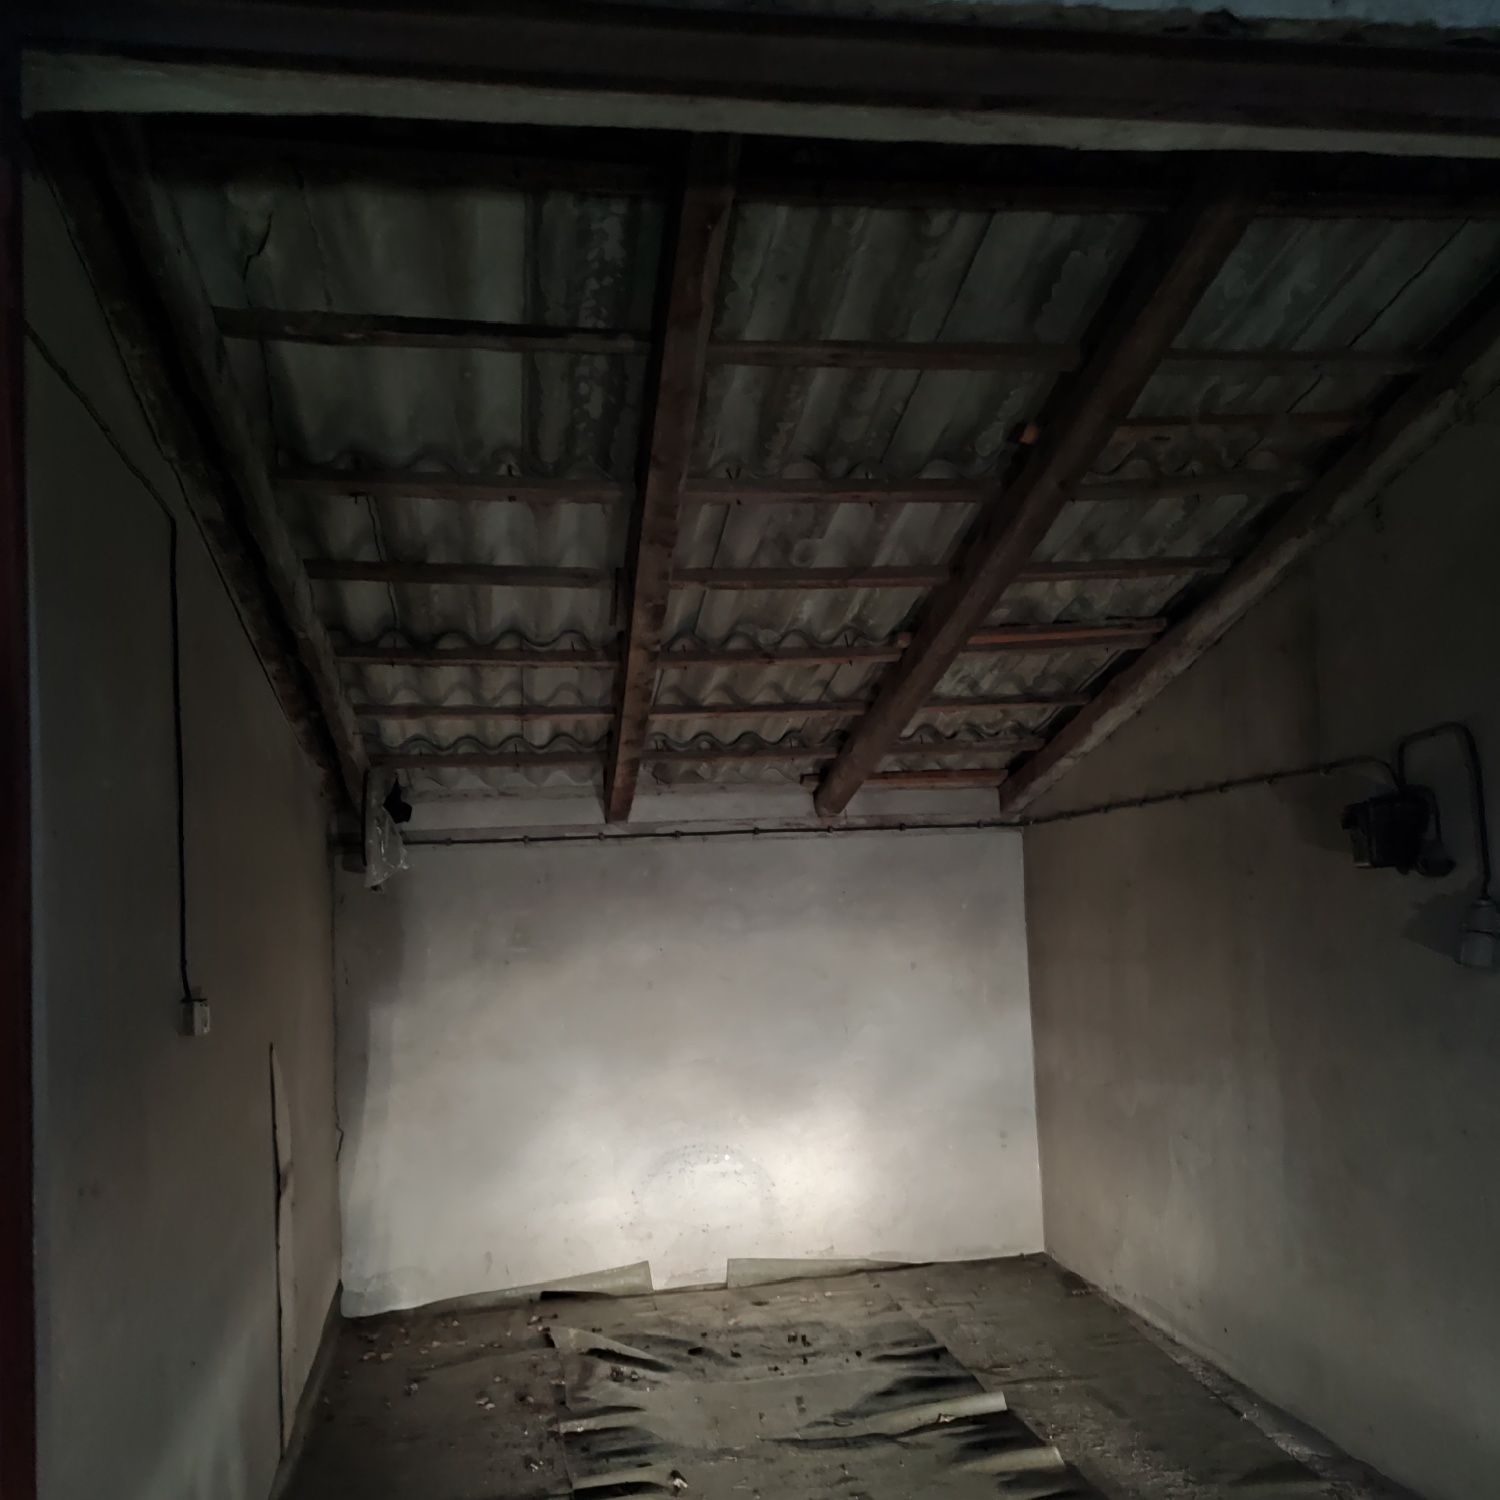 Garaż do wynajęcia w Zduńskiej Woli